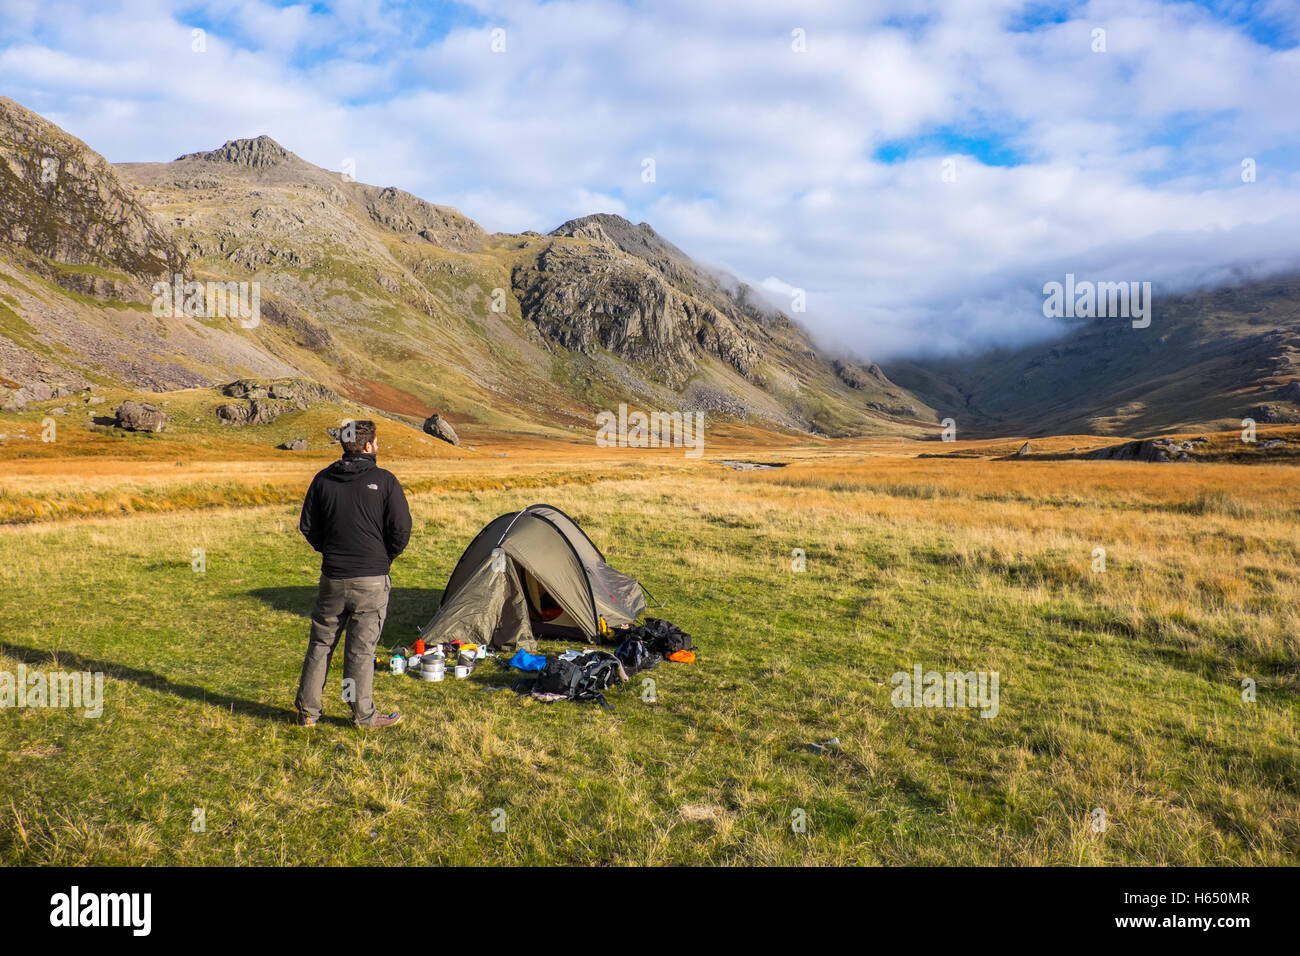 Camping sauvage dans la haute vallée de l'ESK dans le district du lac, un jeune homme se distingue par sa tente Banque D'Images